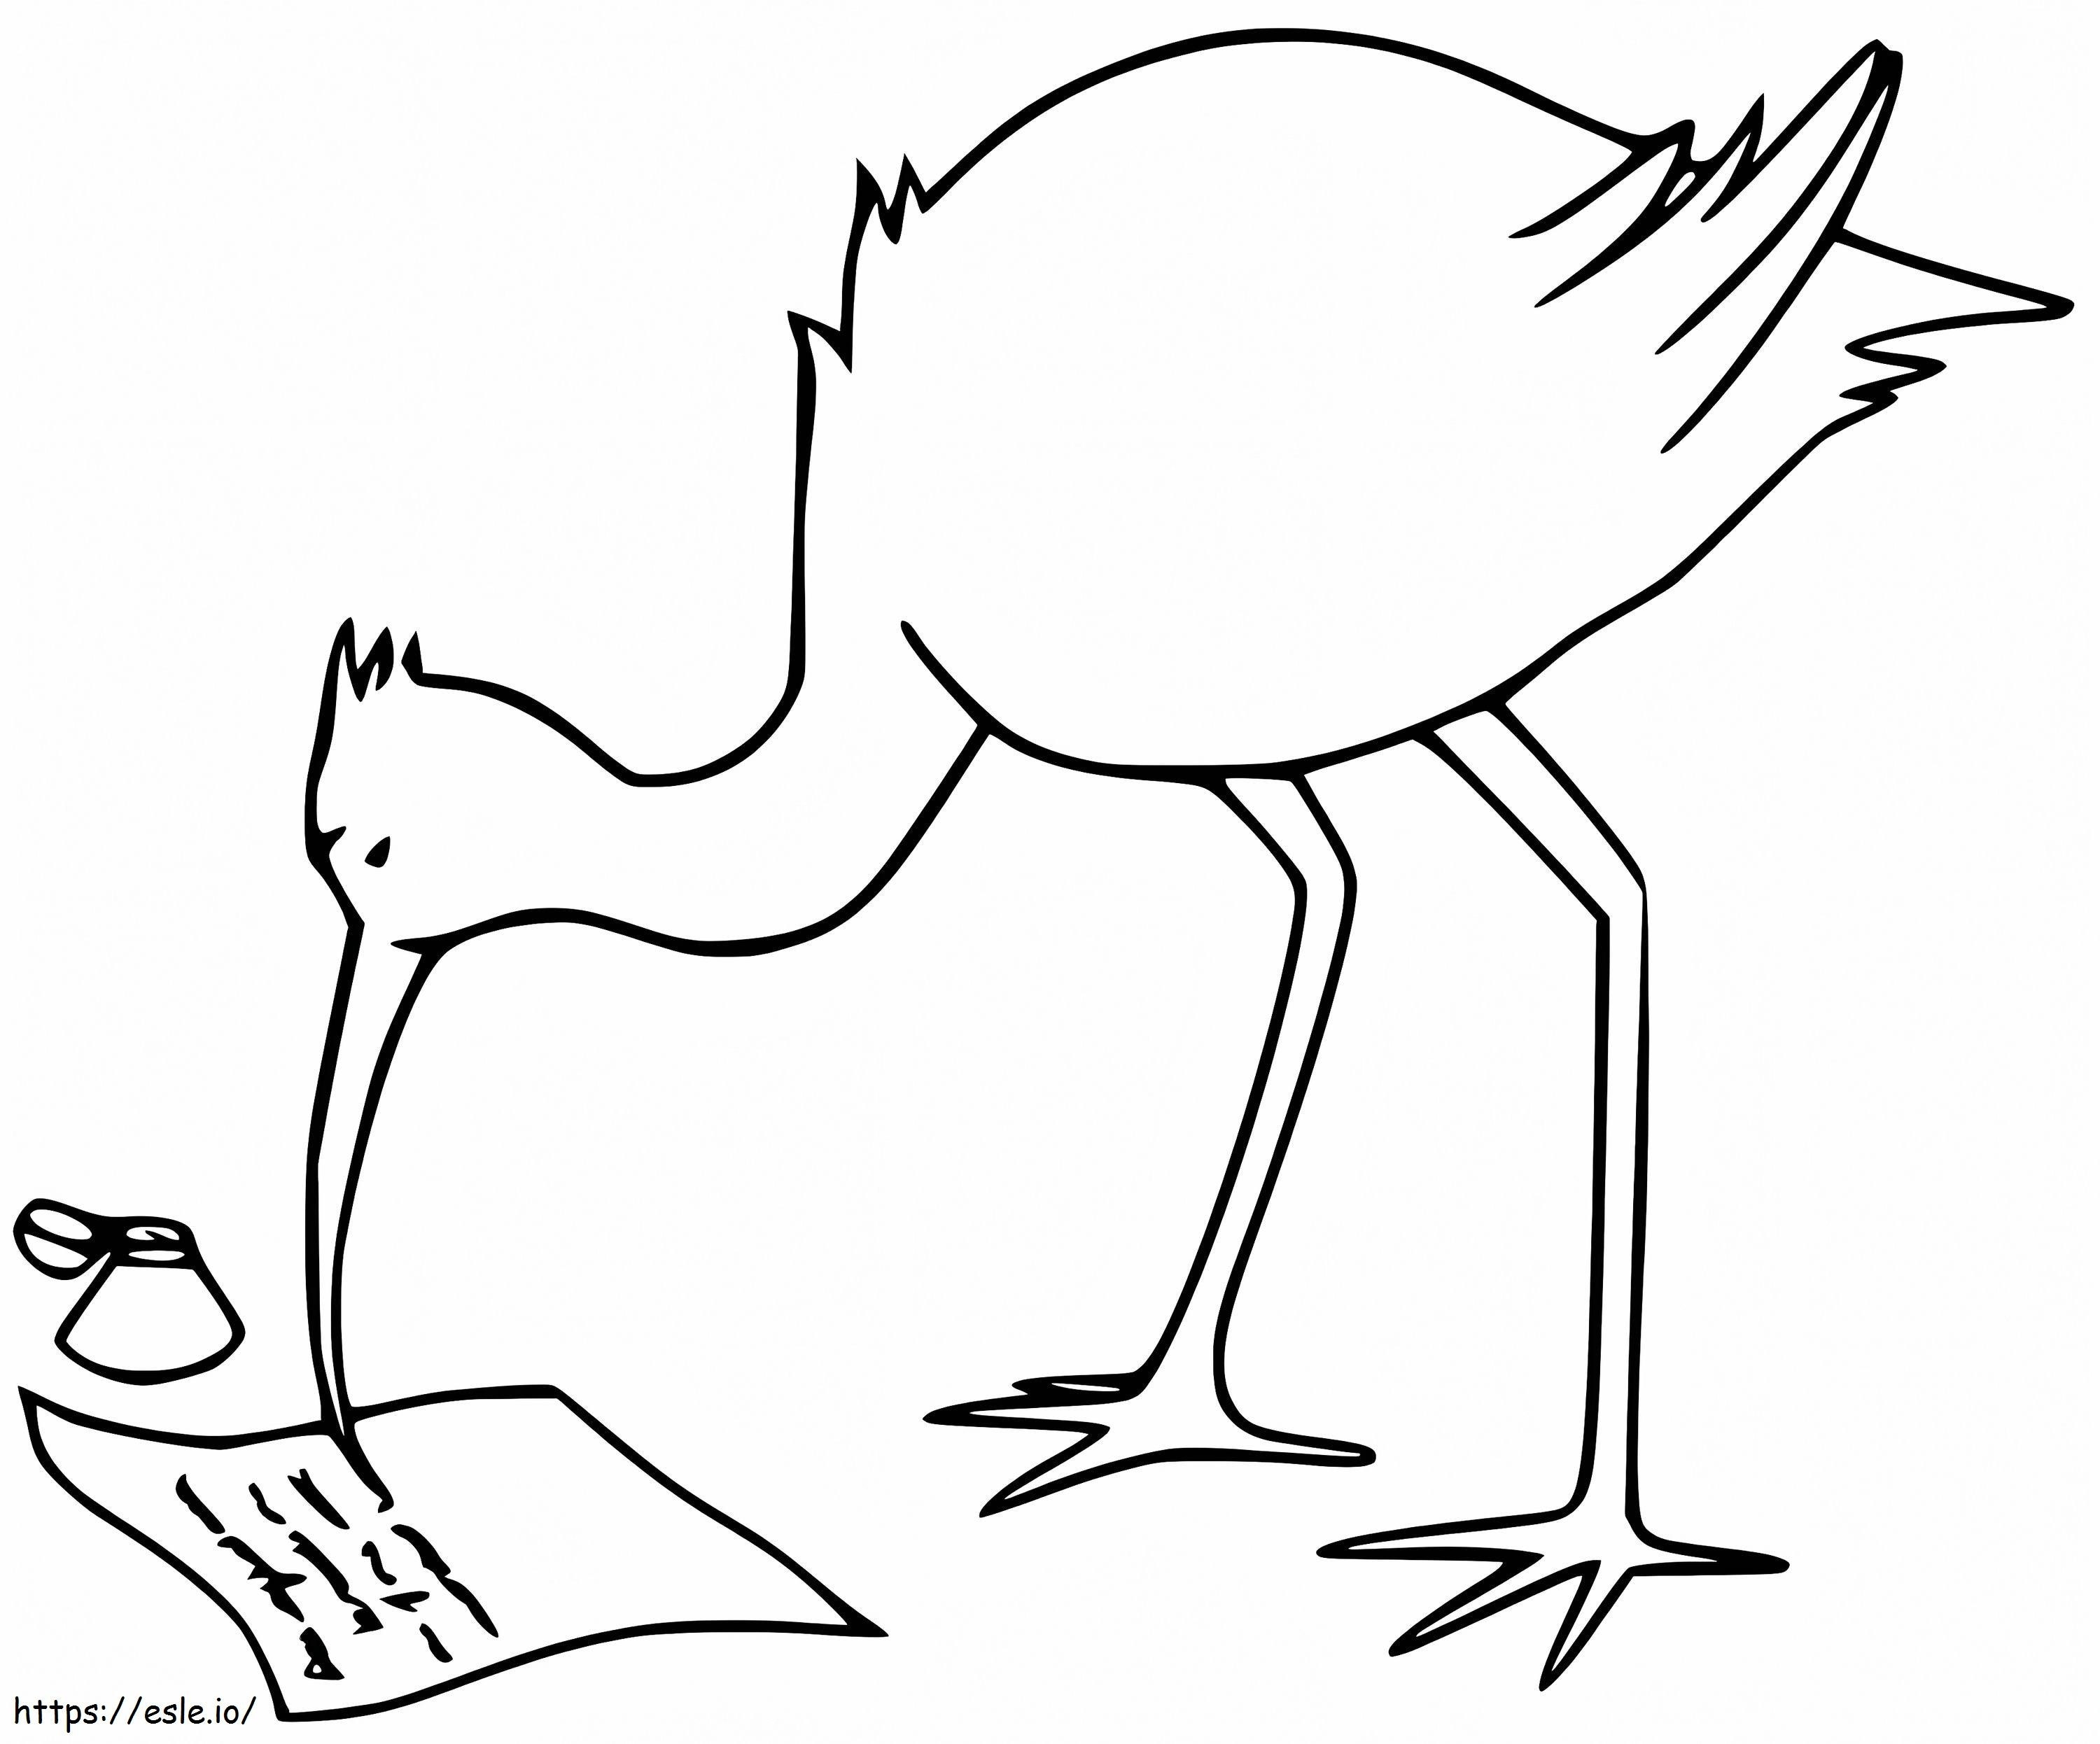 Ibis-Schreiben ausmalbilder